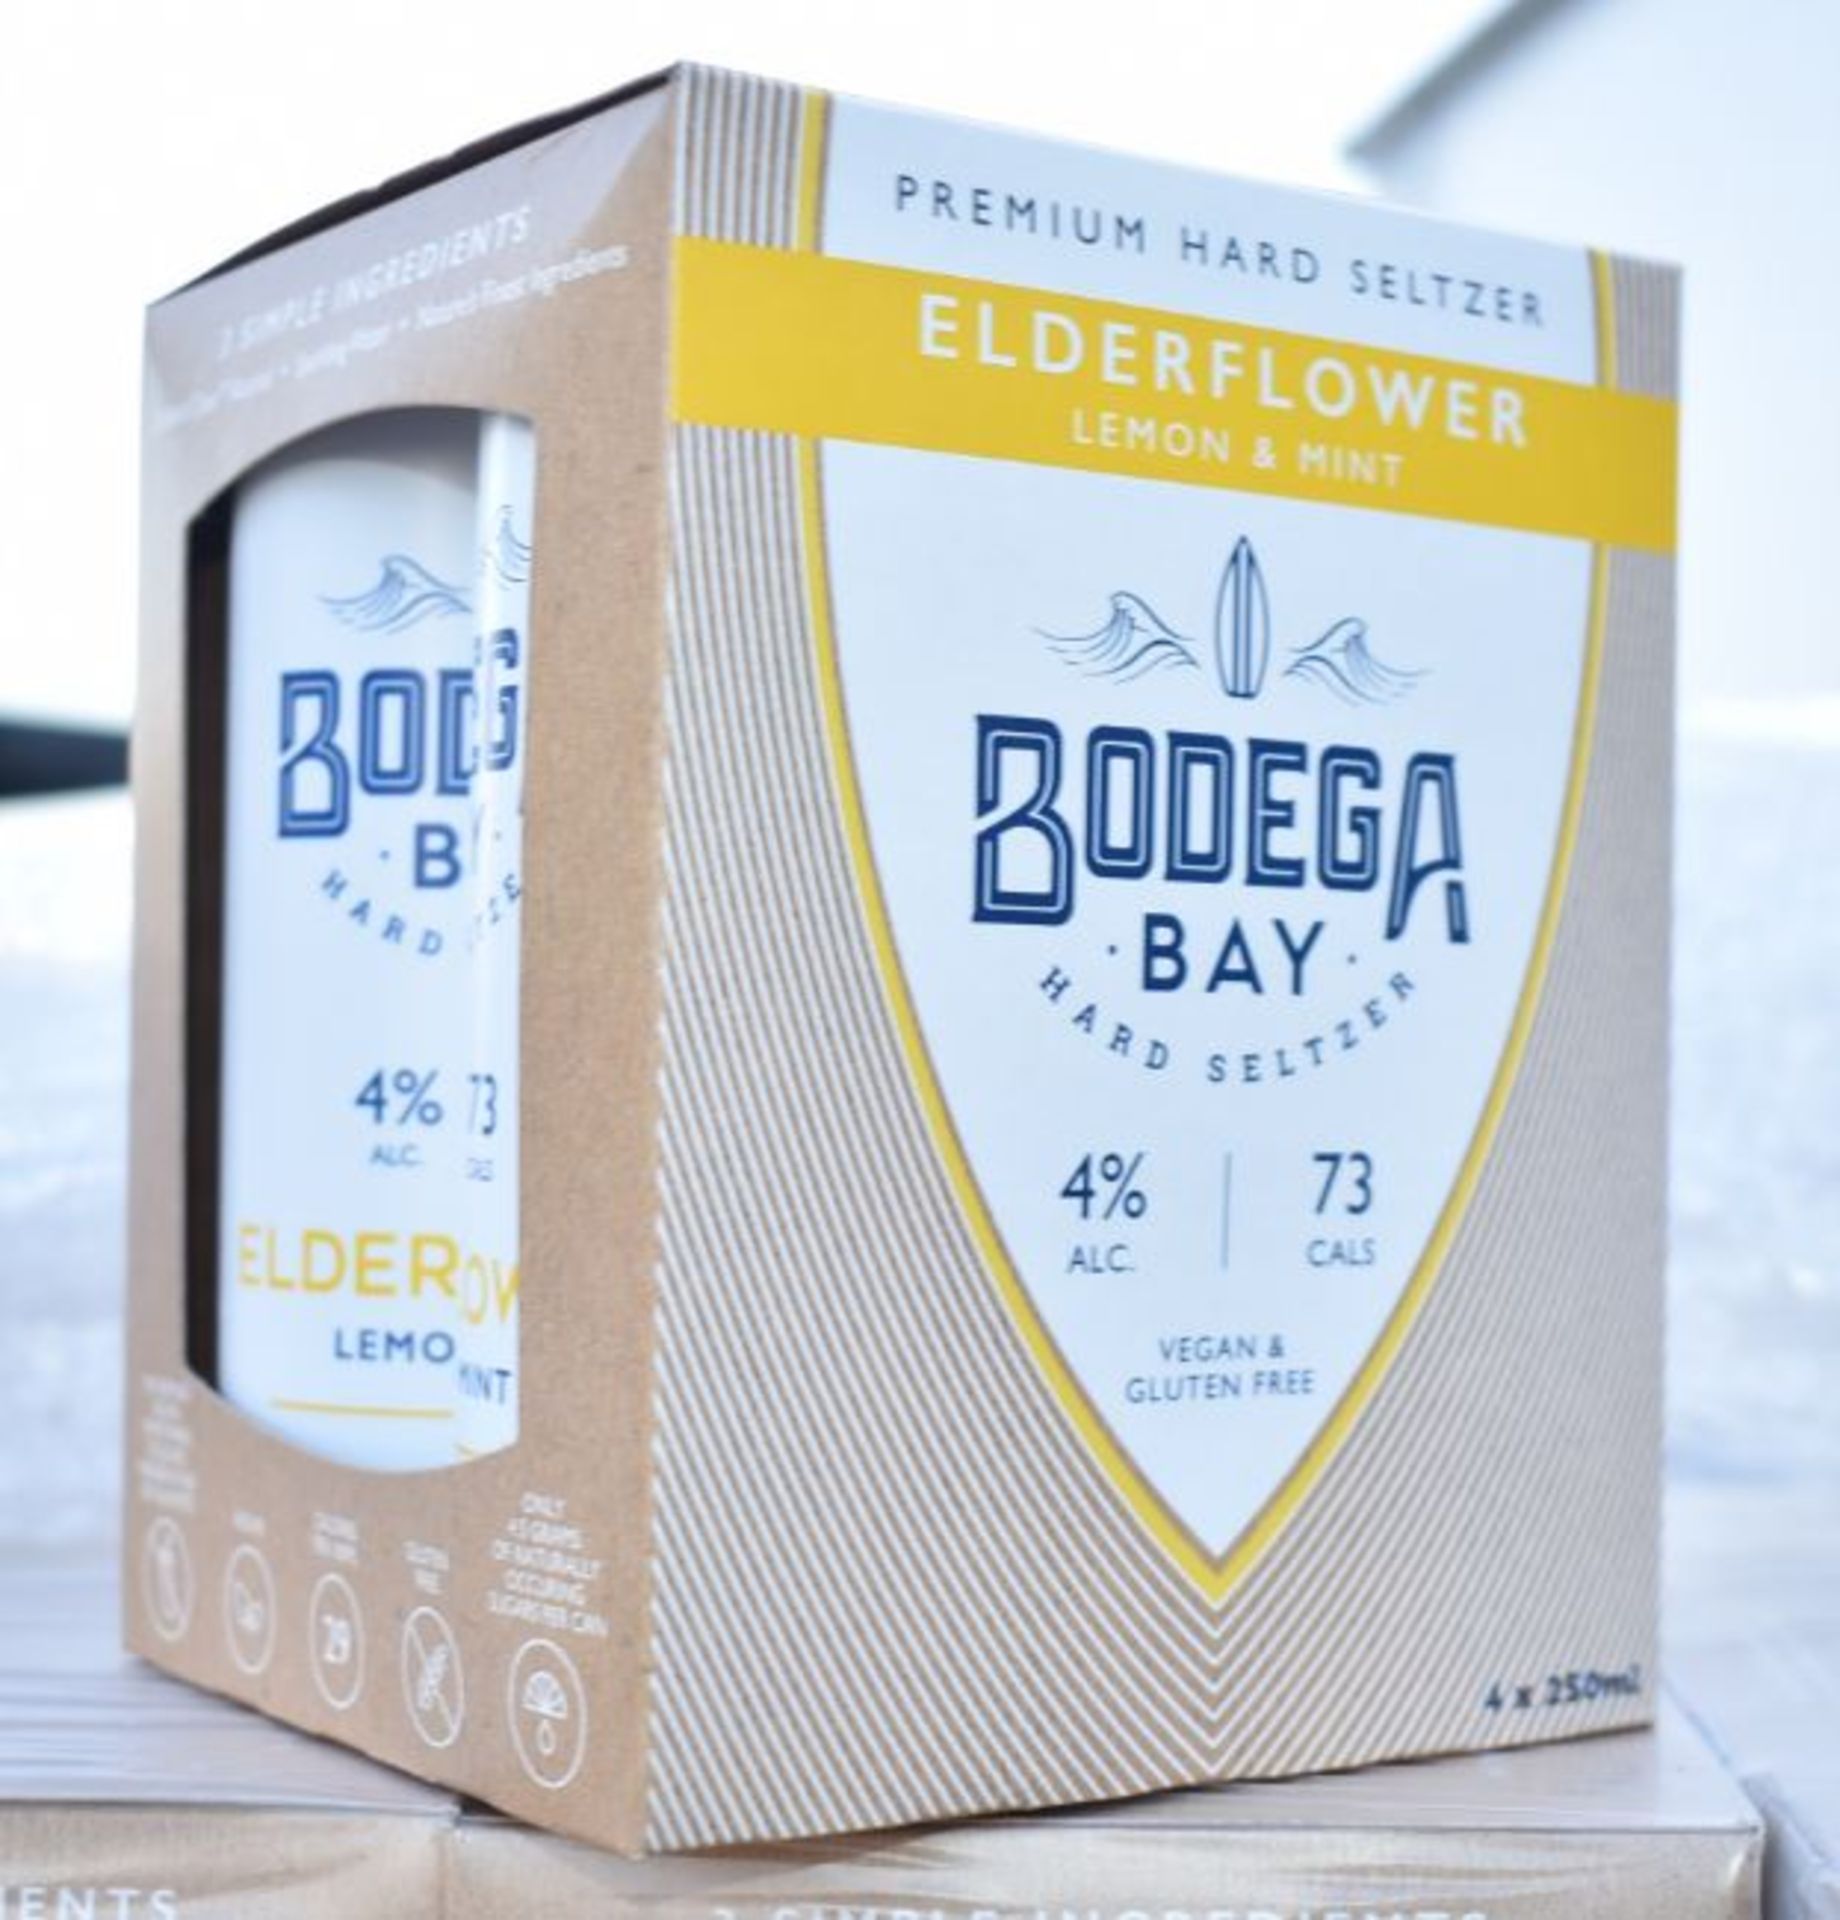 24 x Bodega Bay Hard Seltzer 250ml Alcoholic Sparkling Water Drinks - Elderflower Lemon & Mint - Image 6 of 9